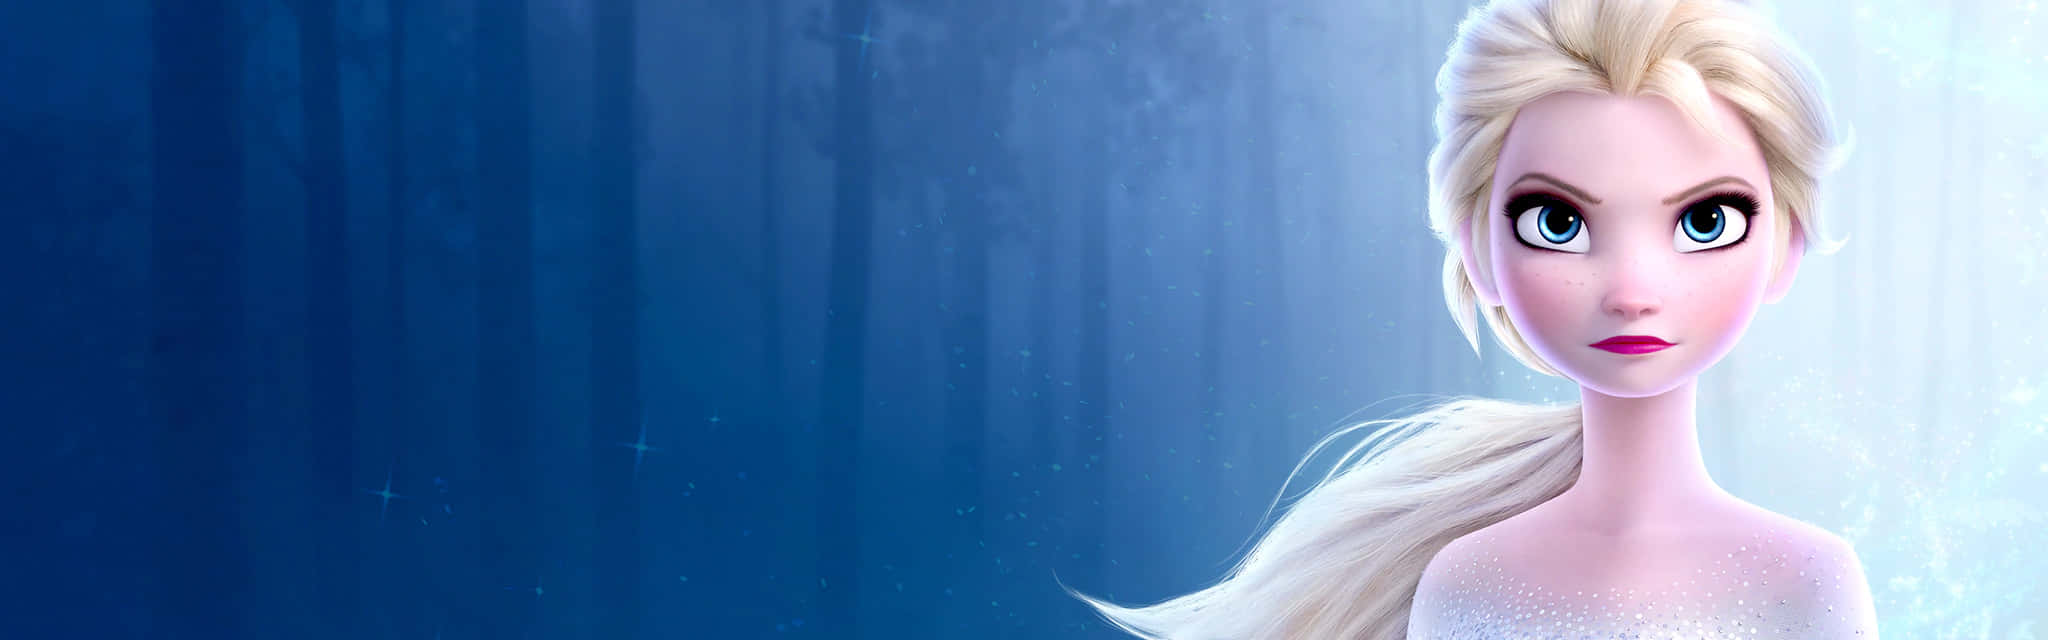 Mad Elsa Frozen Picture